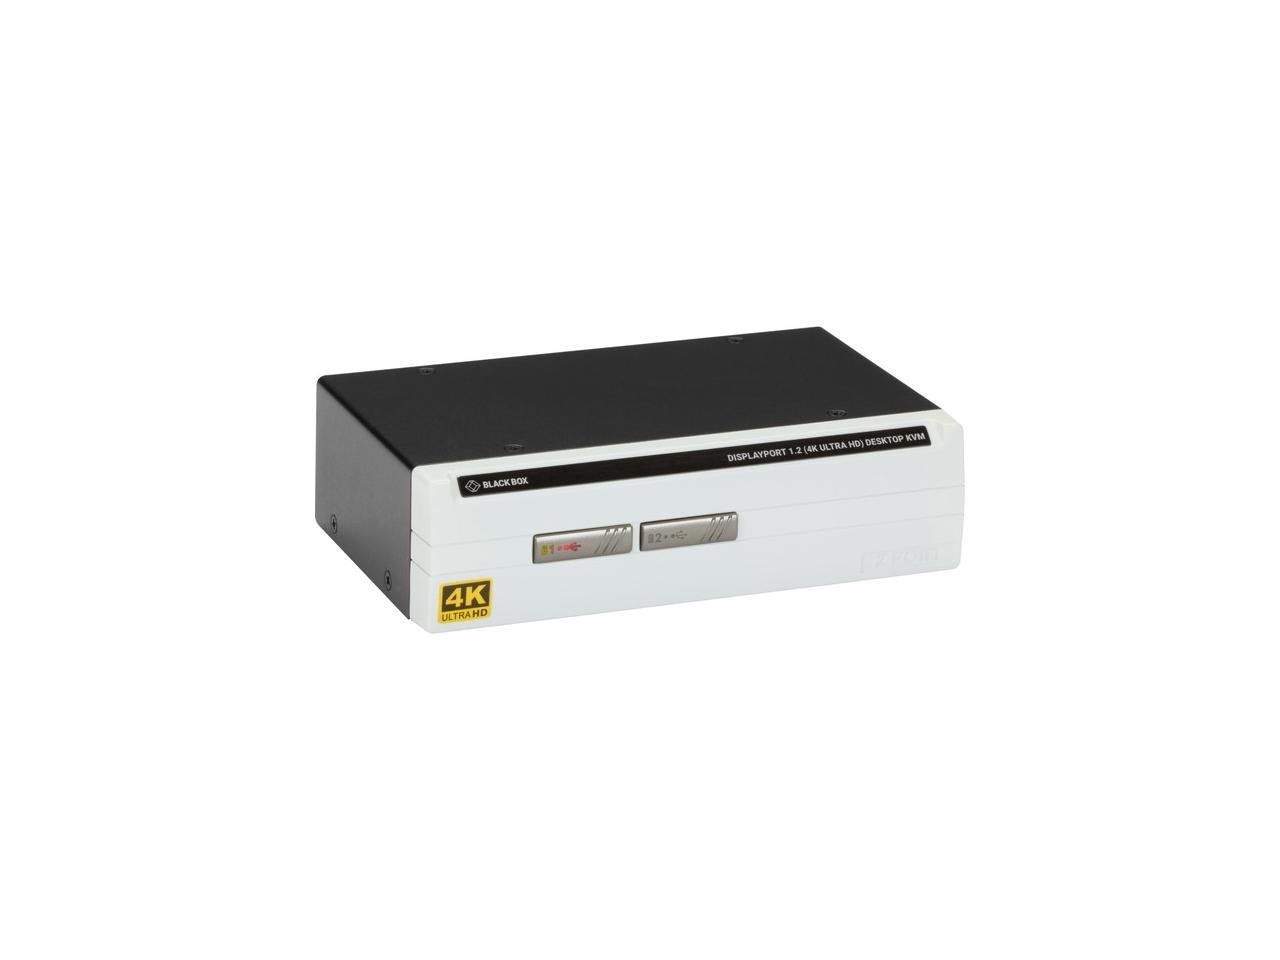 4kdpkvmxt 100m Kvm Extender Displayport Uhd 4k Audio Usb 2 0 Rs232 Kvm Extender Kit Black Box